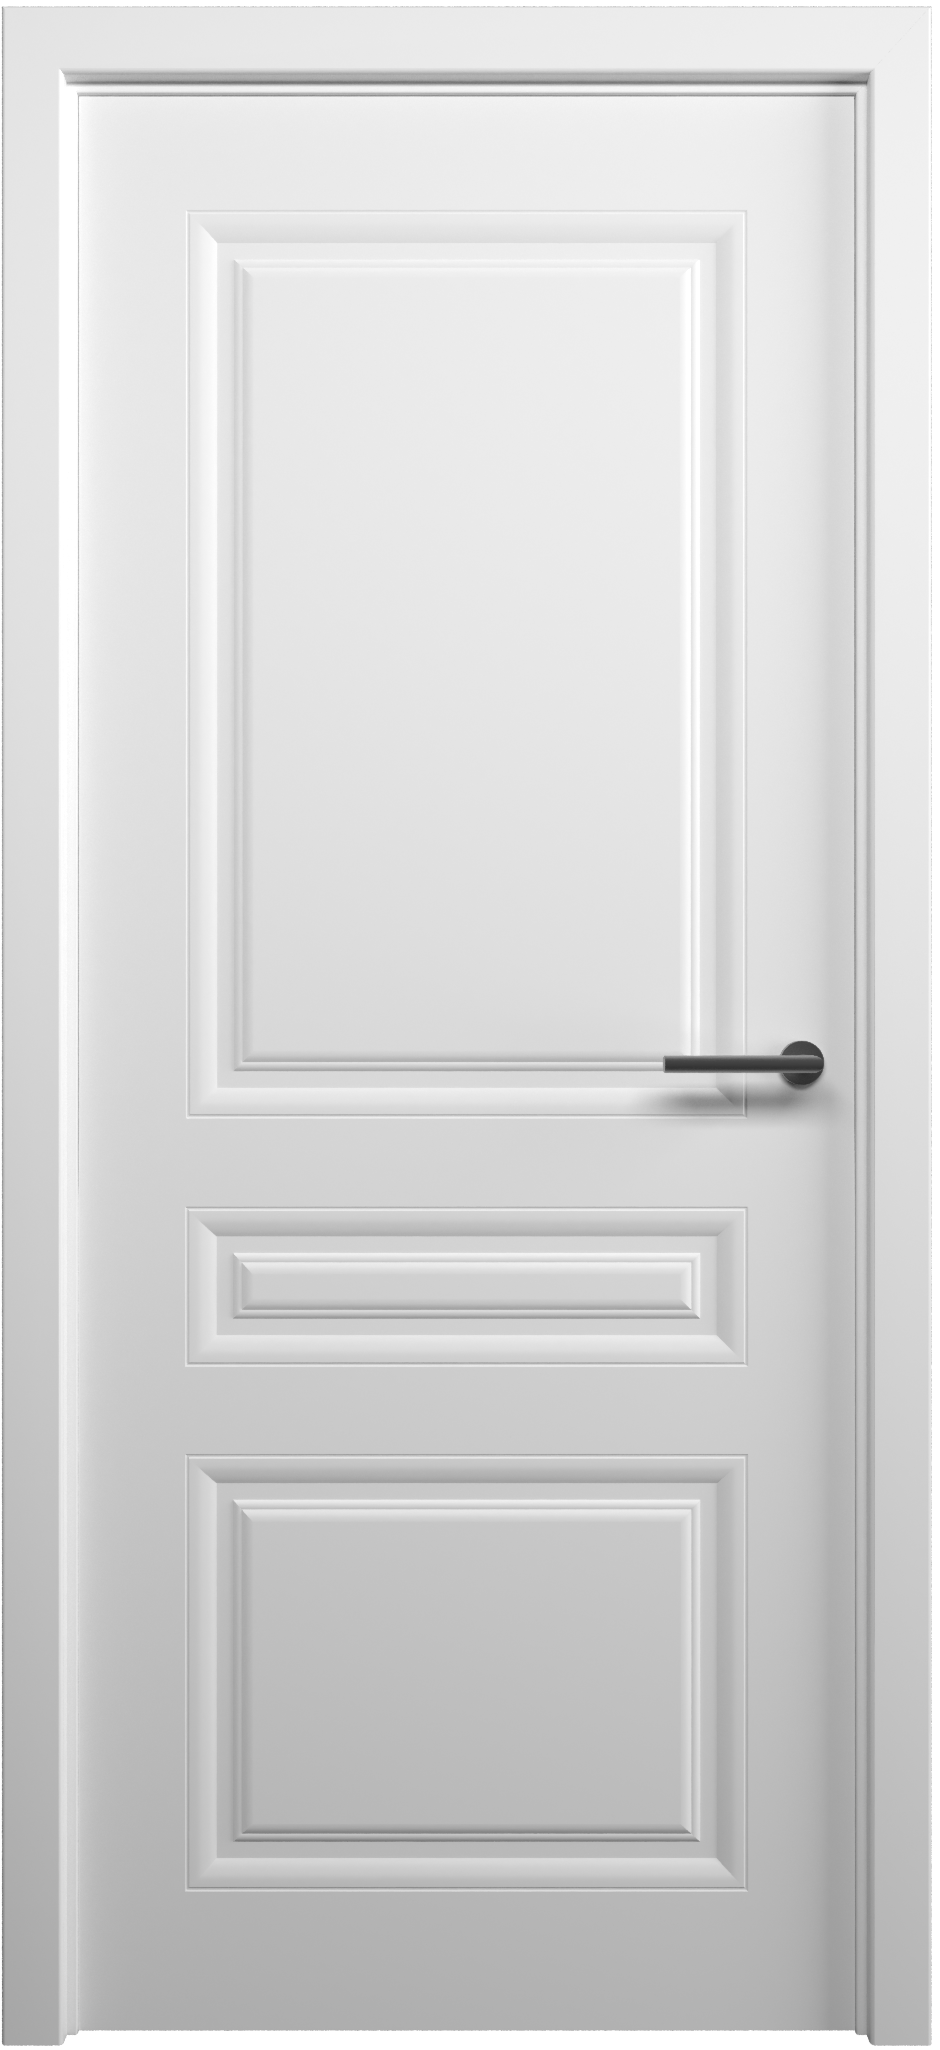 Полотно дверное глухое СХЕМА Эмаль-2, ПГ Стиль-2 700 белый (без замка)